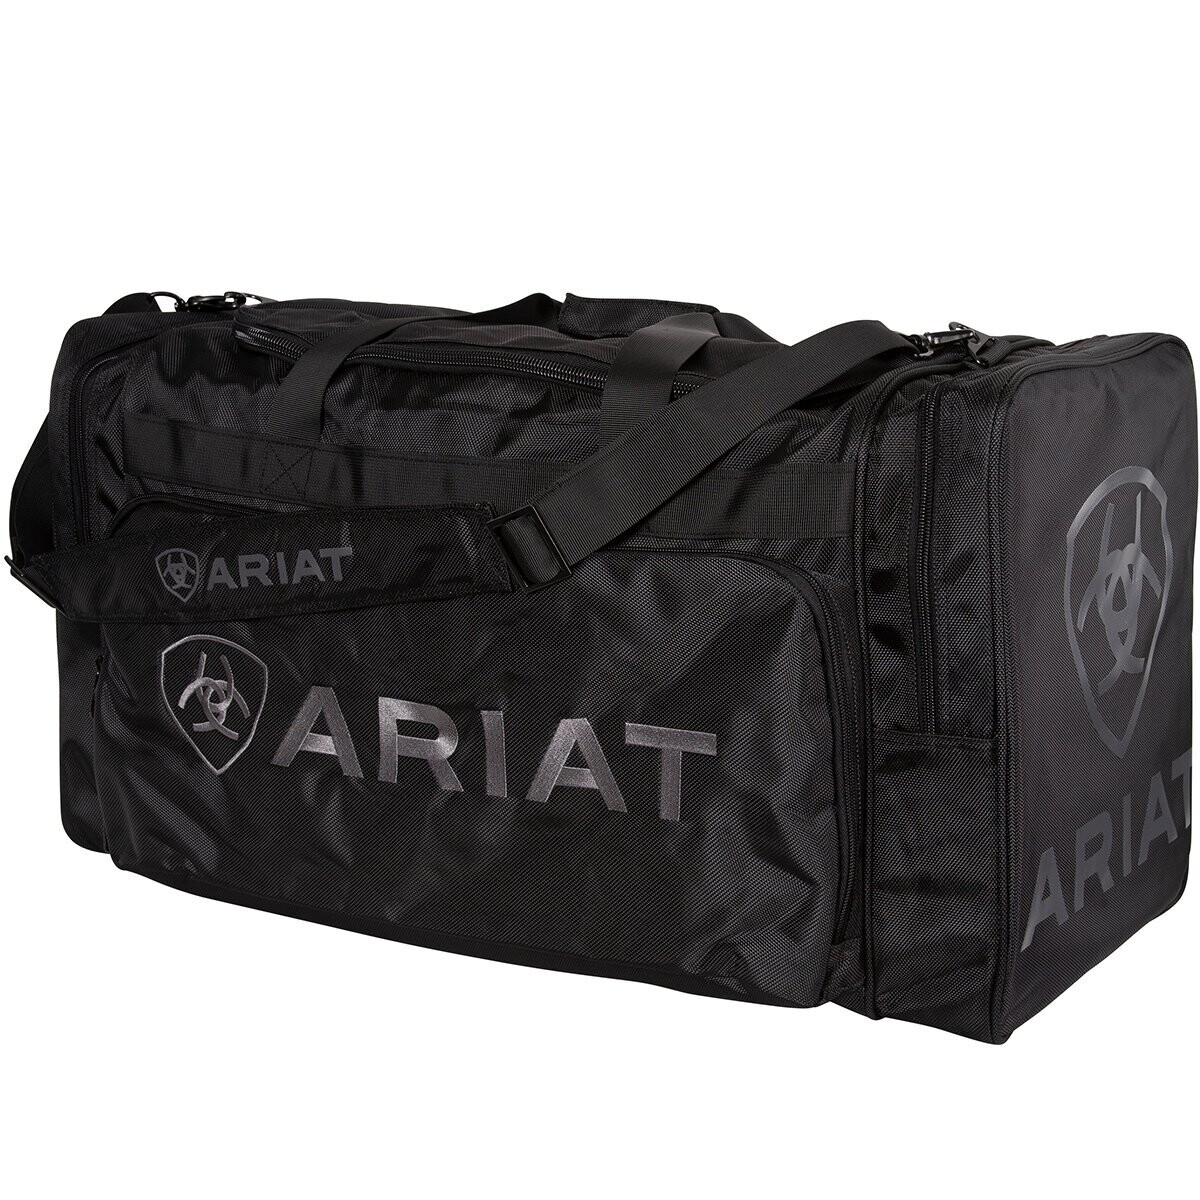 Ariat Gear Bags, Colour: Black